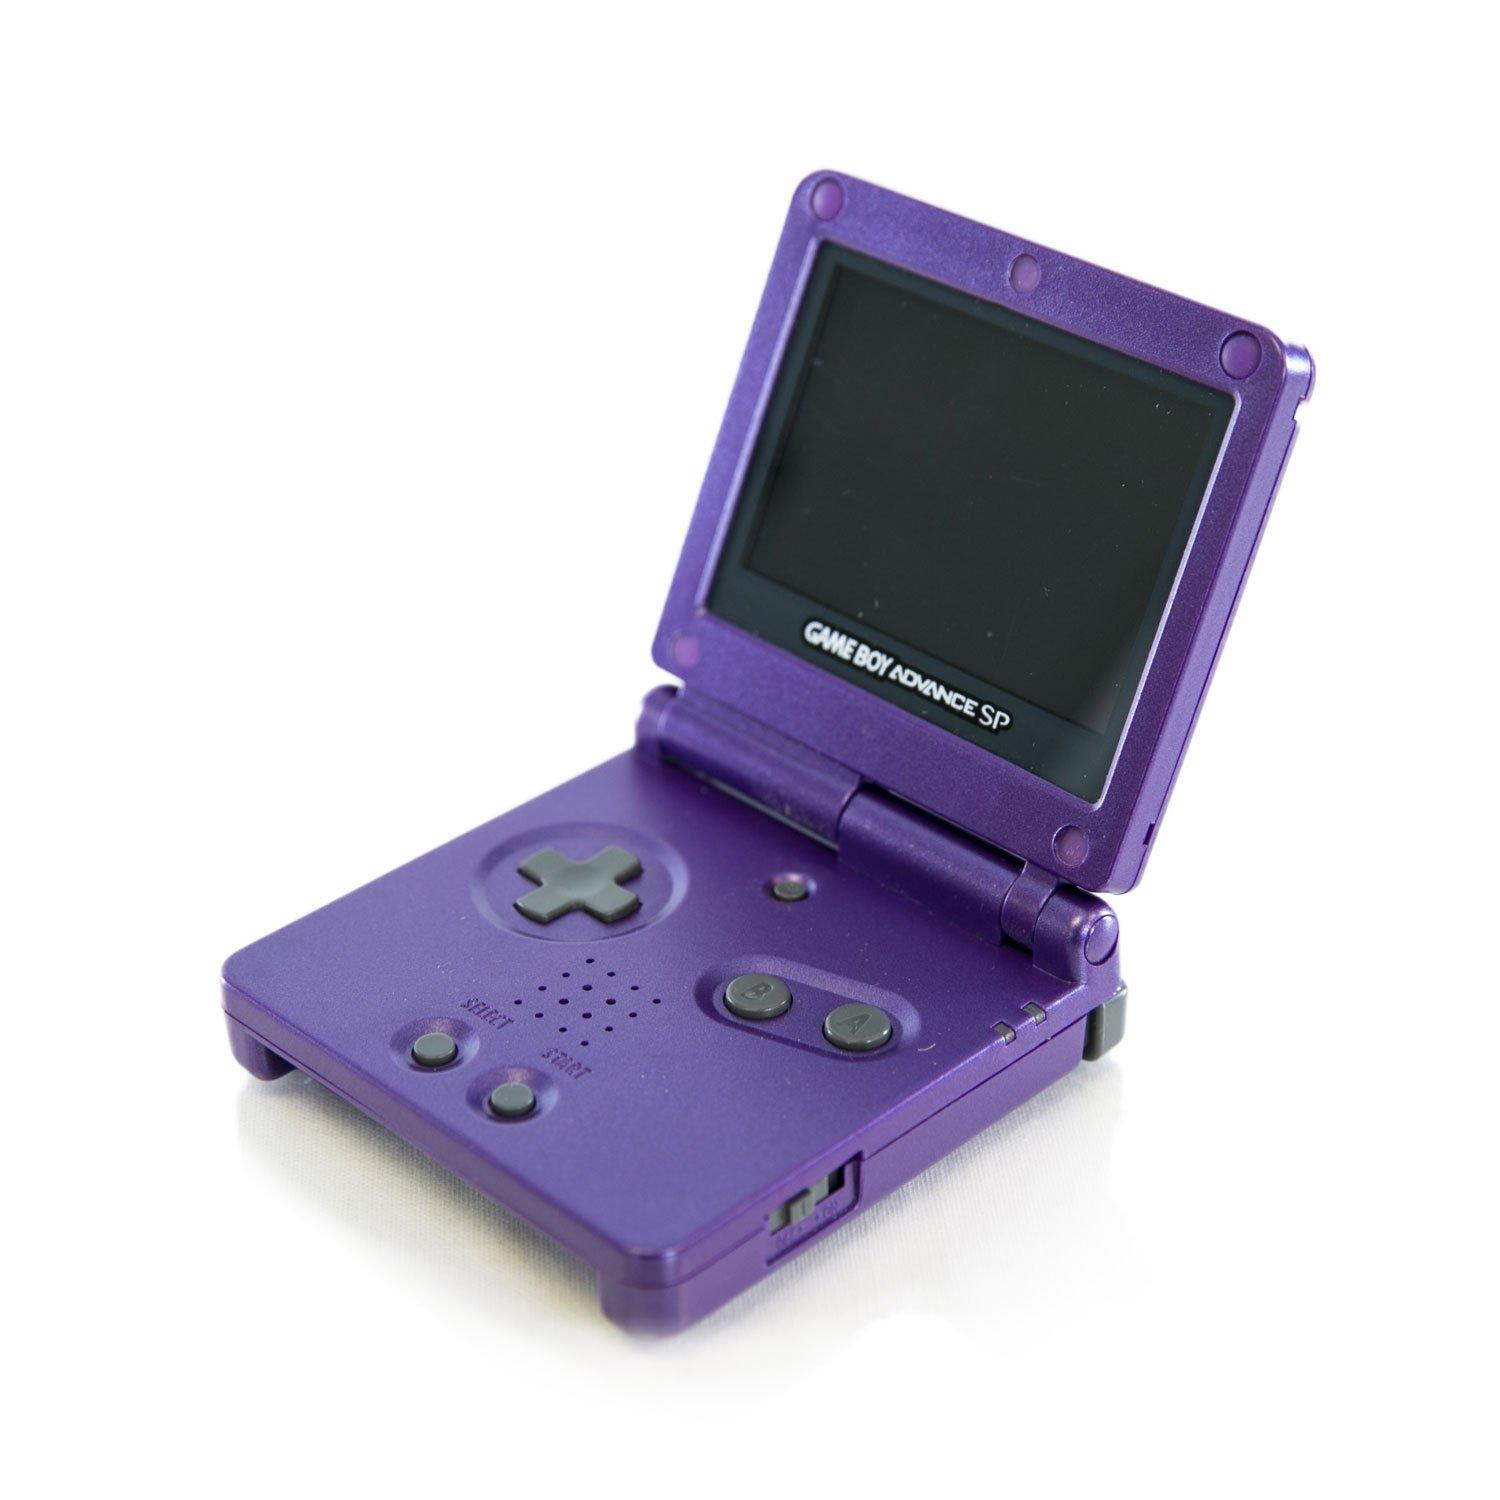 Game Boy Advance, Nintendo